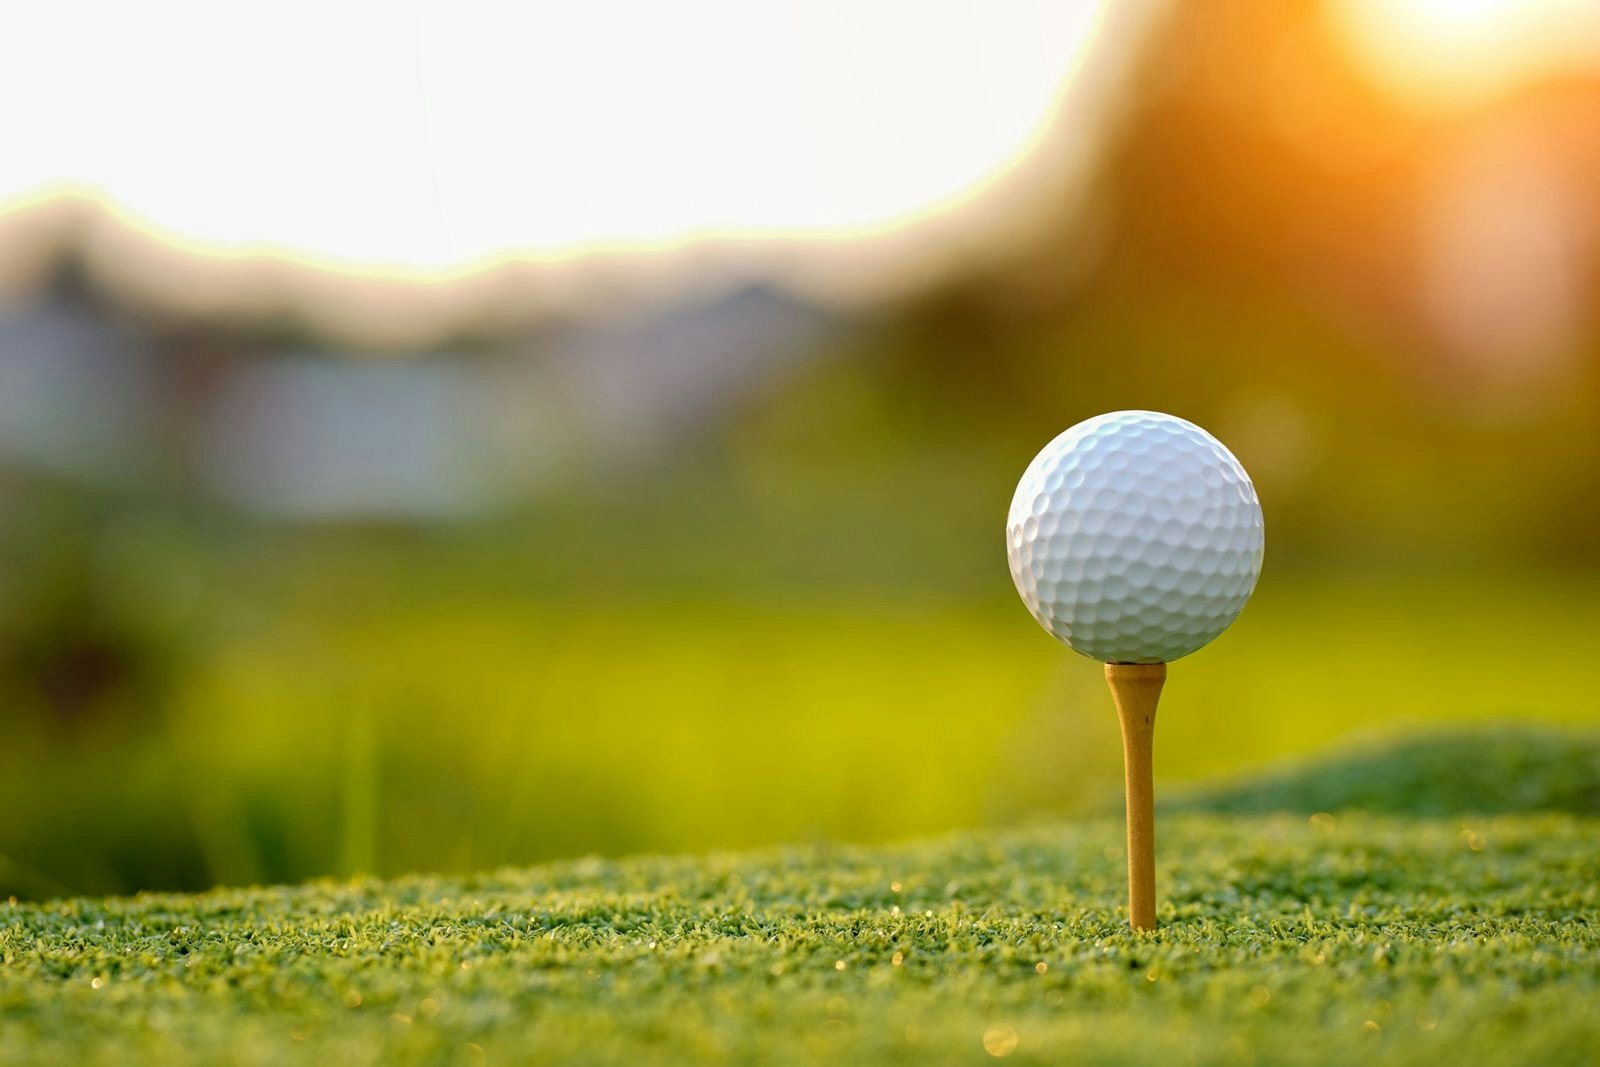 A golf ball on a tee close up shot